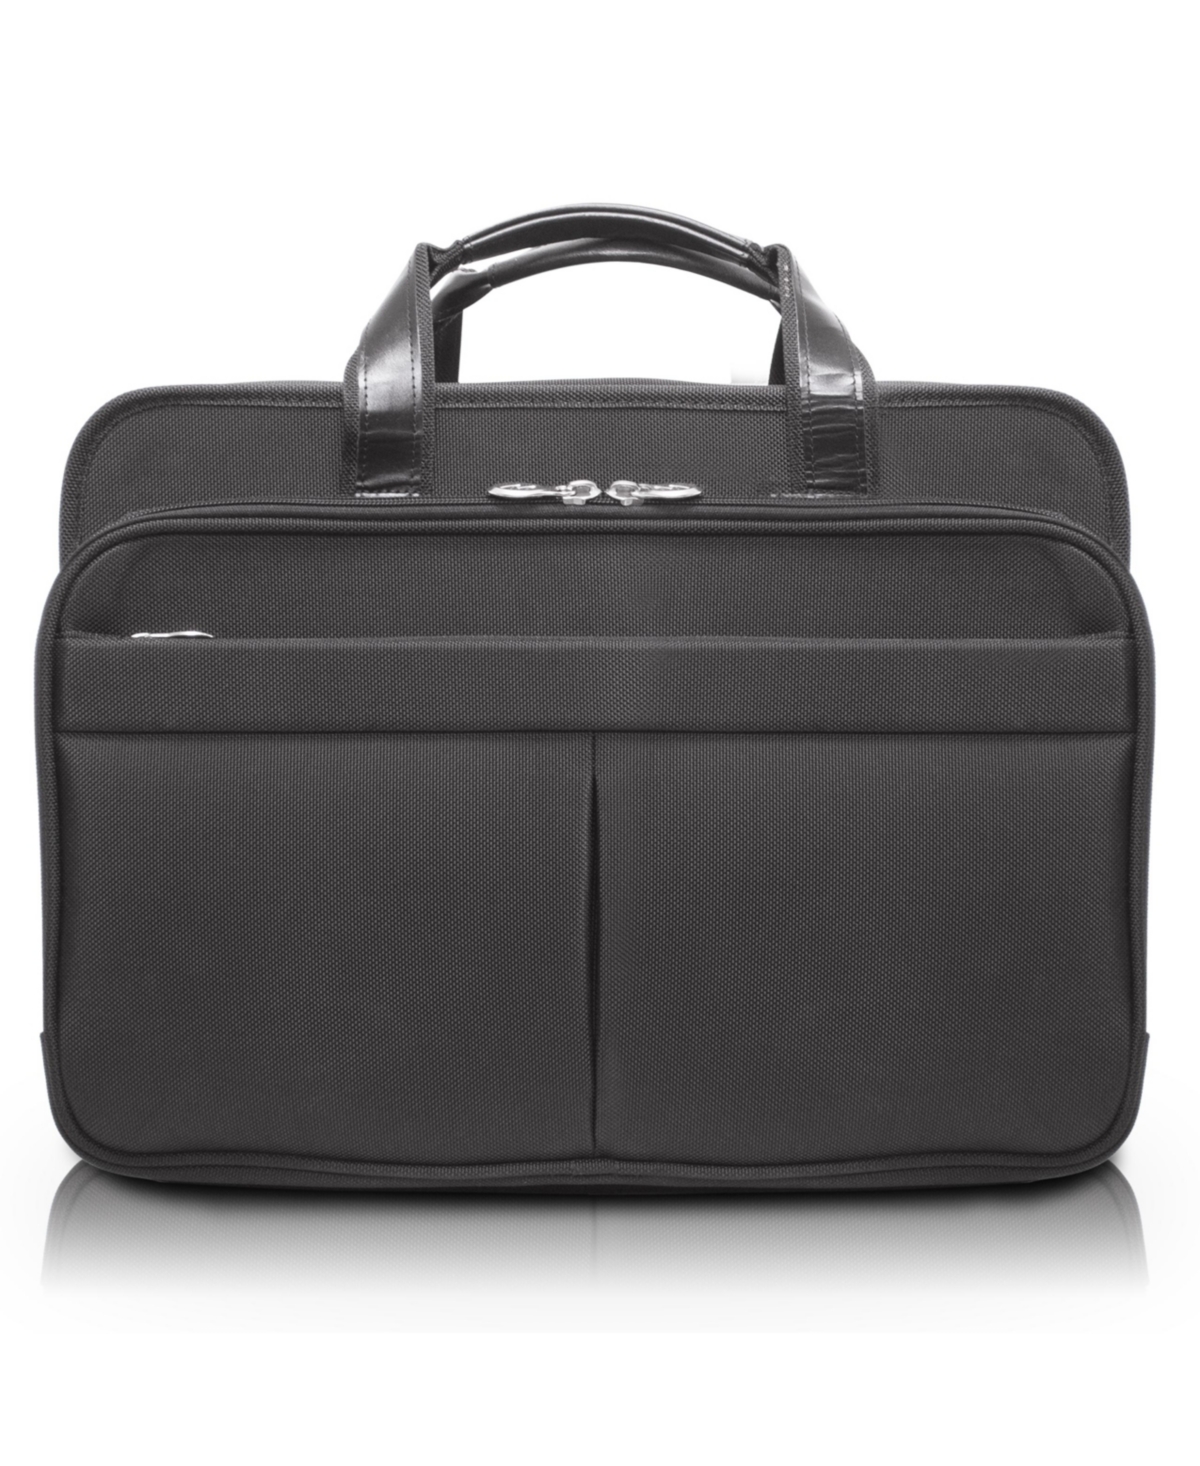 Walton, 17" Expandable Double Compartment Laptop Briefcase - Black